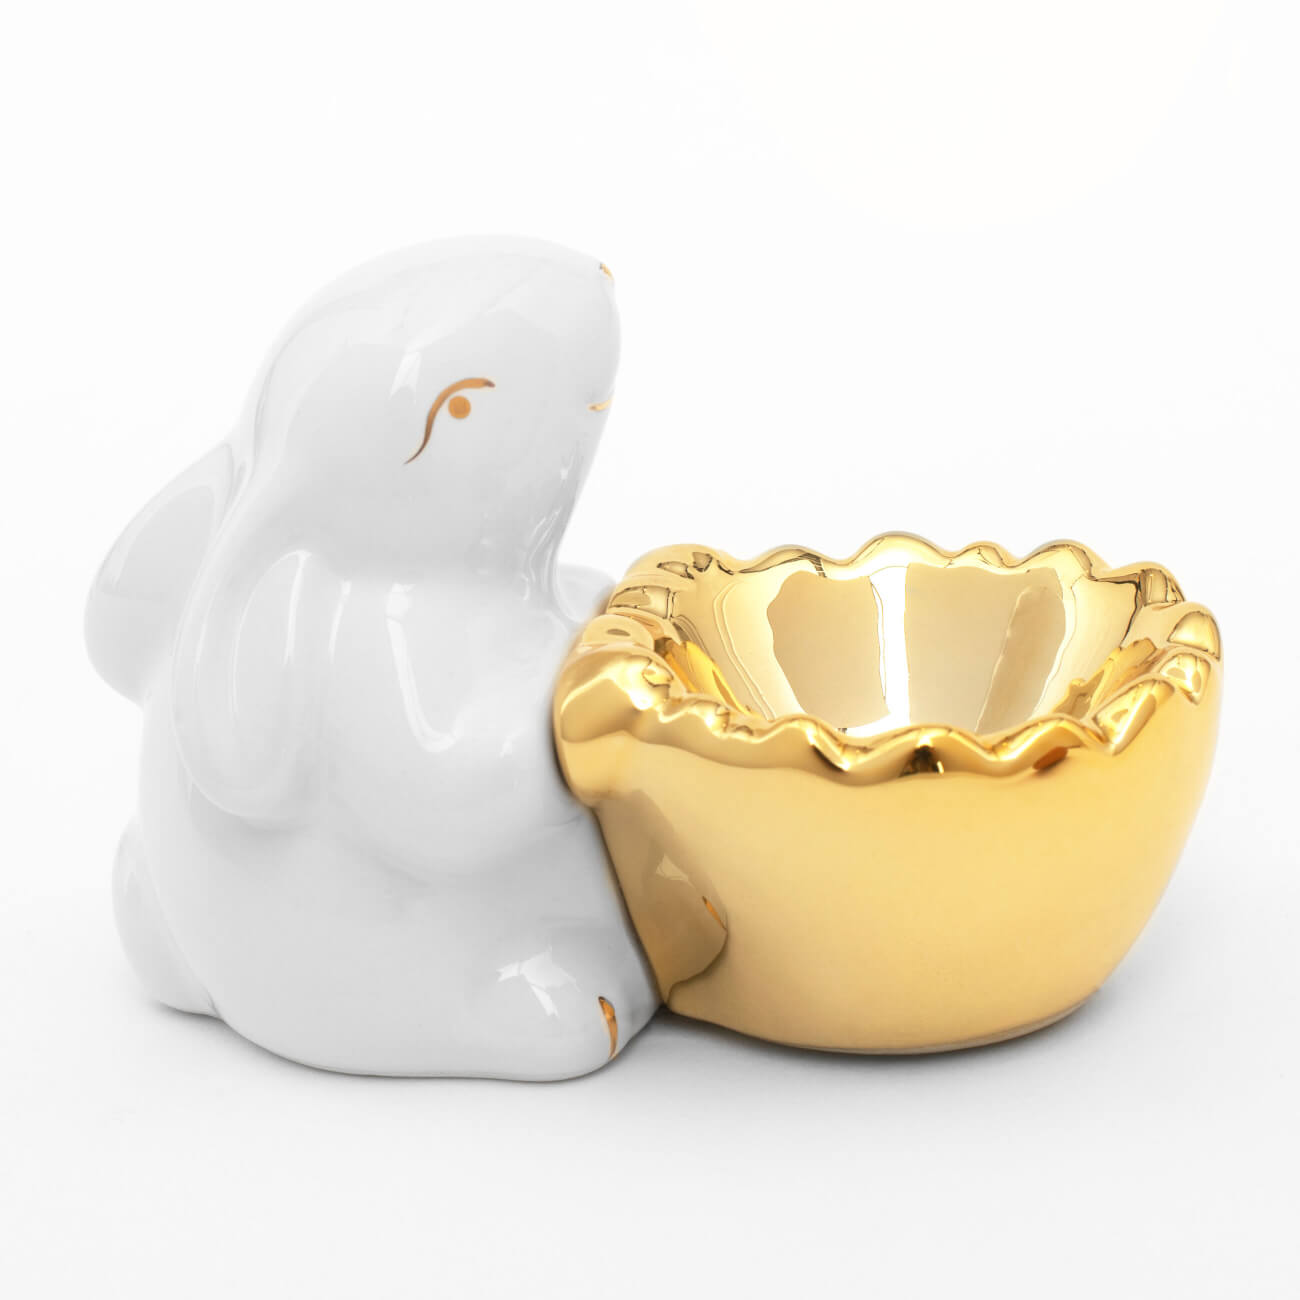 Подставка для яйца, 11 см, керамика, бело-золотистая, Кролик со скорлупой, Easter gold подвеска декоративная 3 см керамика золотистая курица easter gold